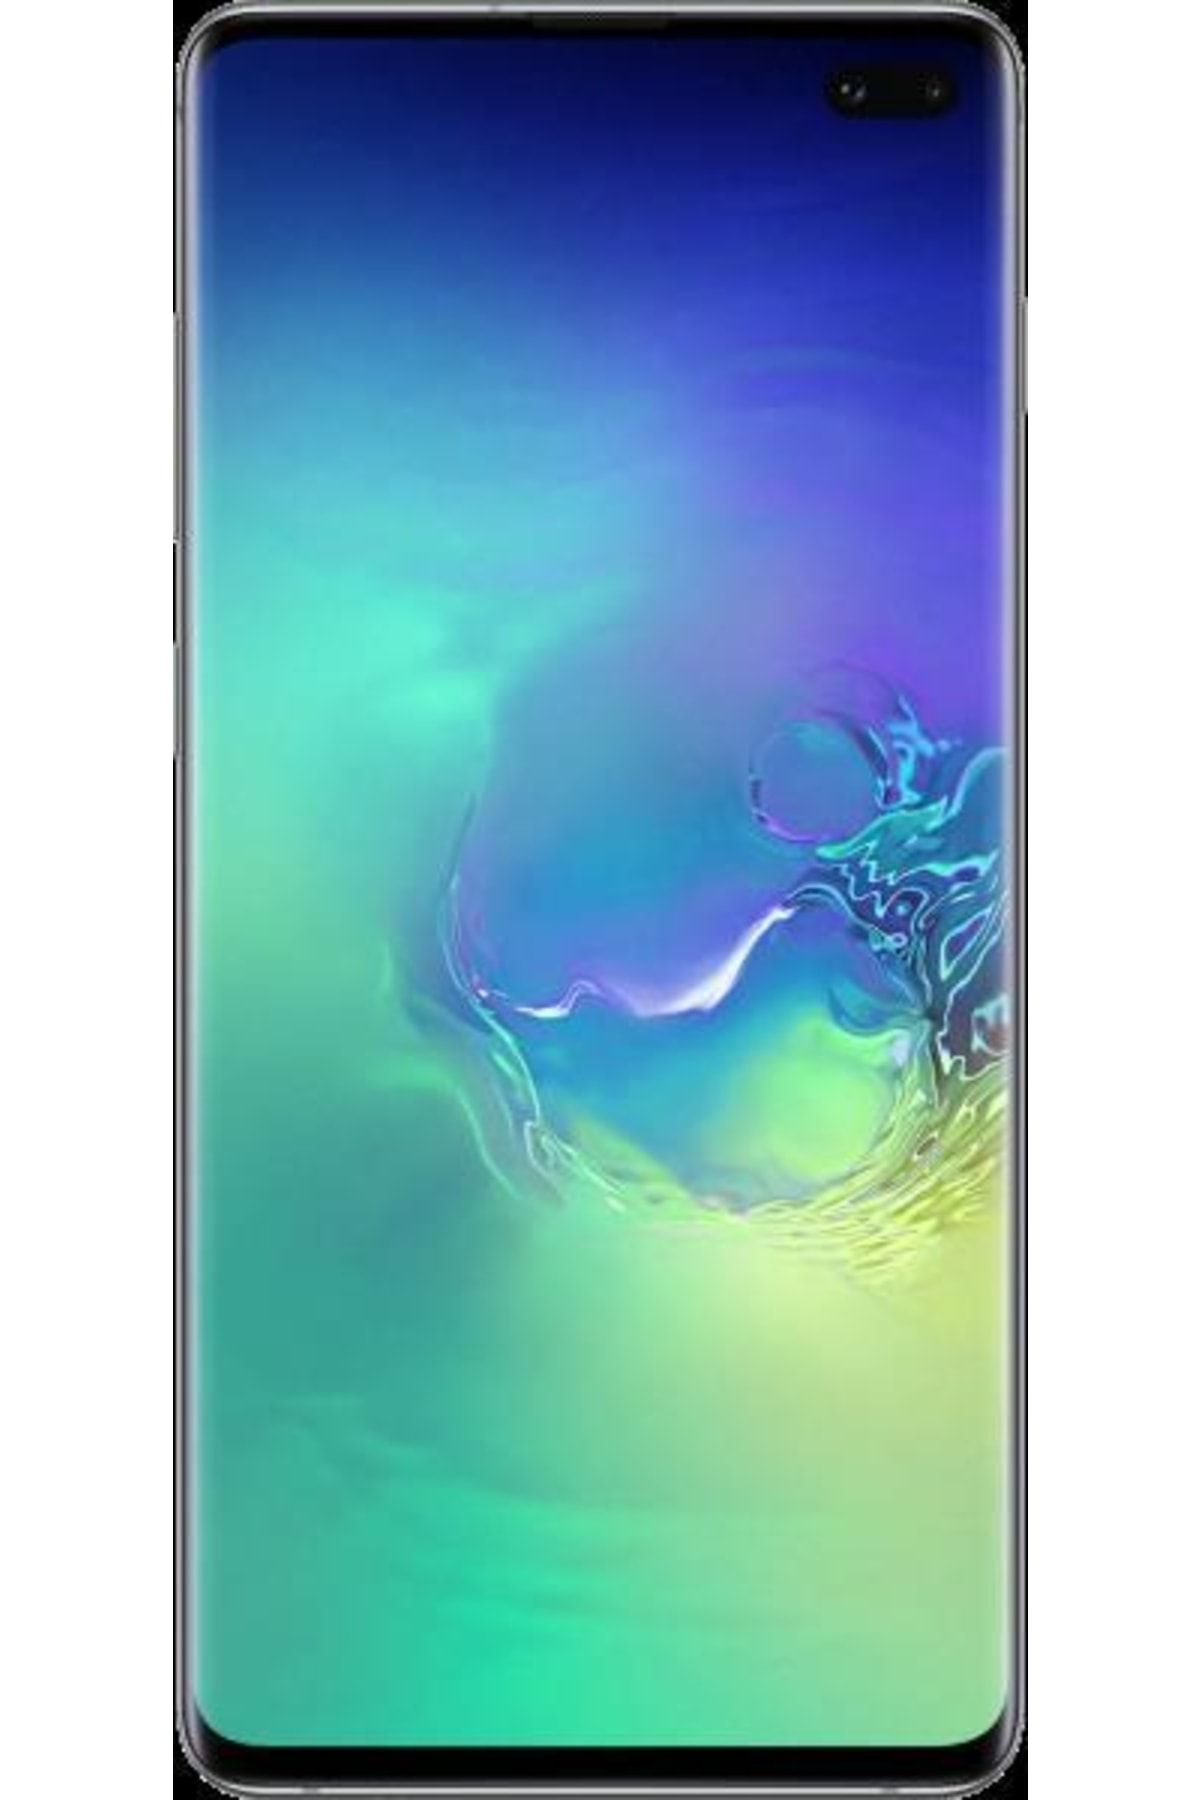 Samsung Yenilenmiş Galaxy S10 Plus Black 128 GB B Kalite (12 Ay Garantili)